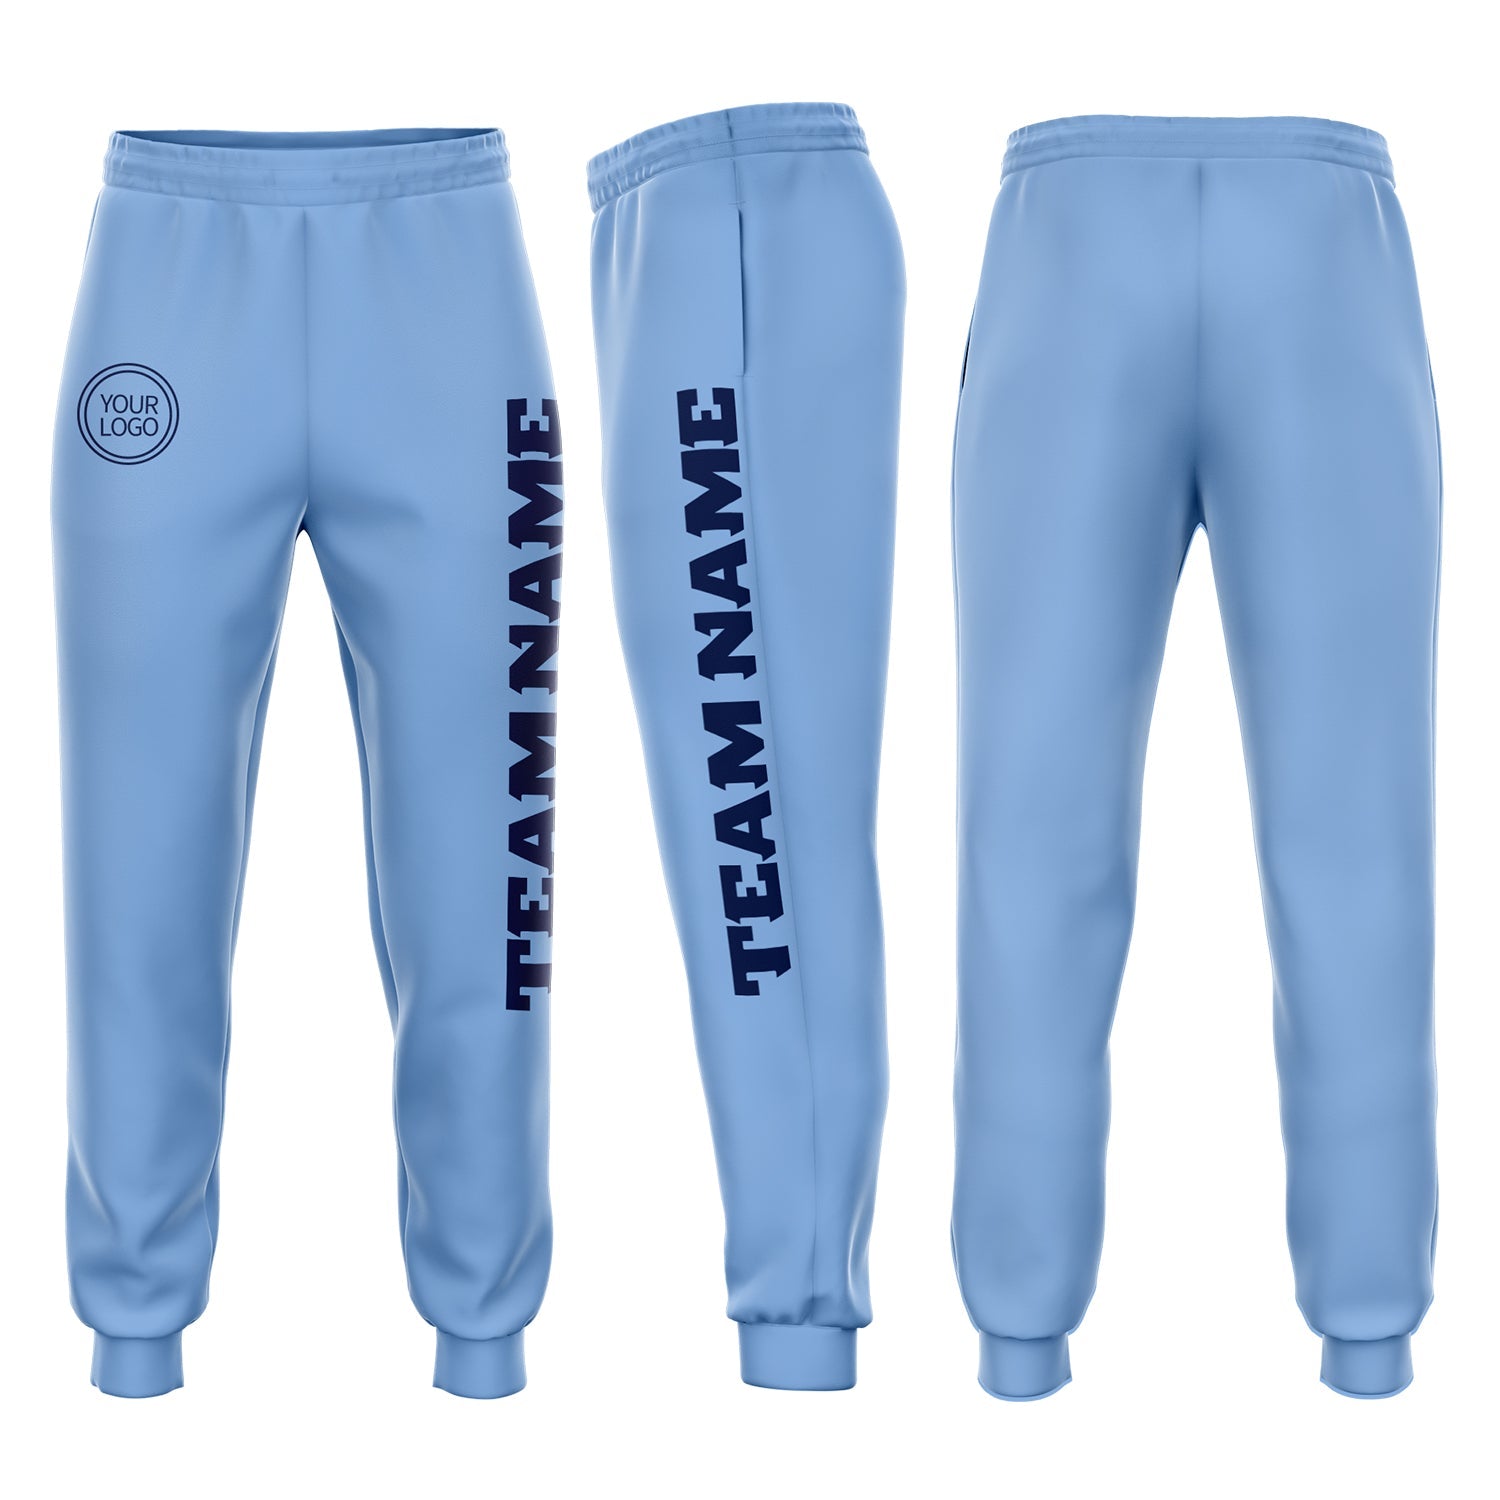 Pantalon de survêtement Jogger bleu marine clair personnalisé